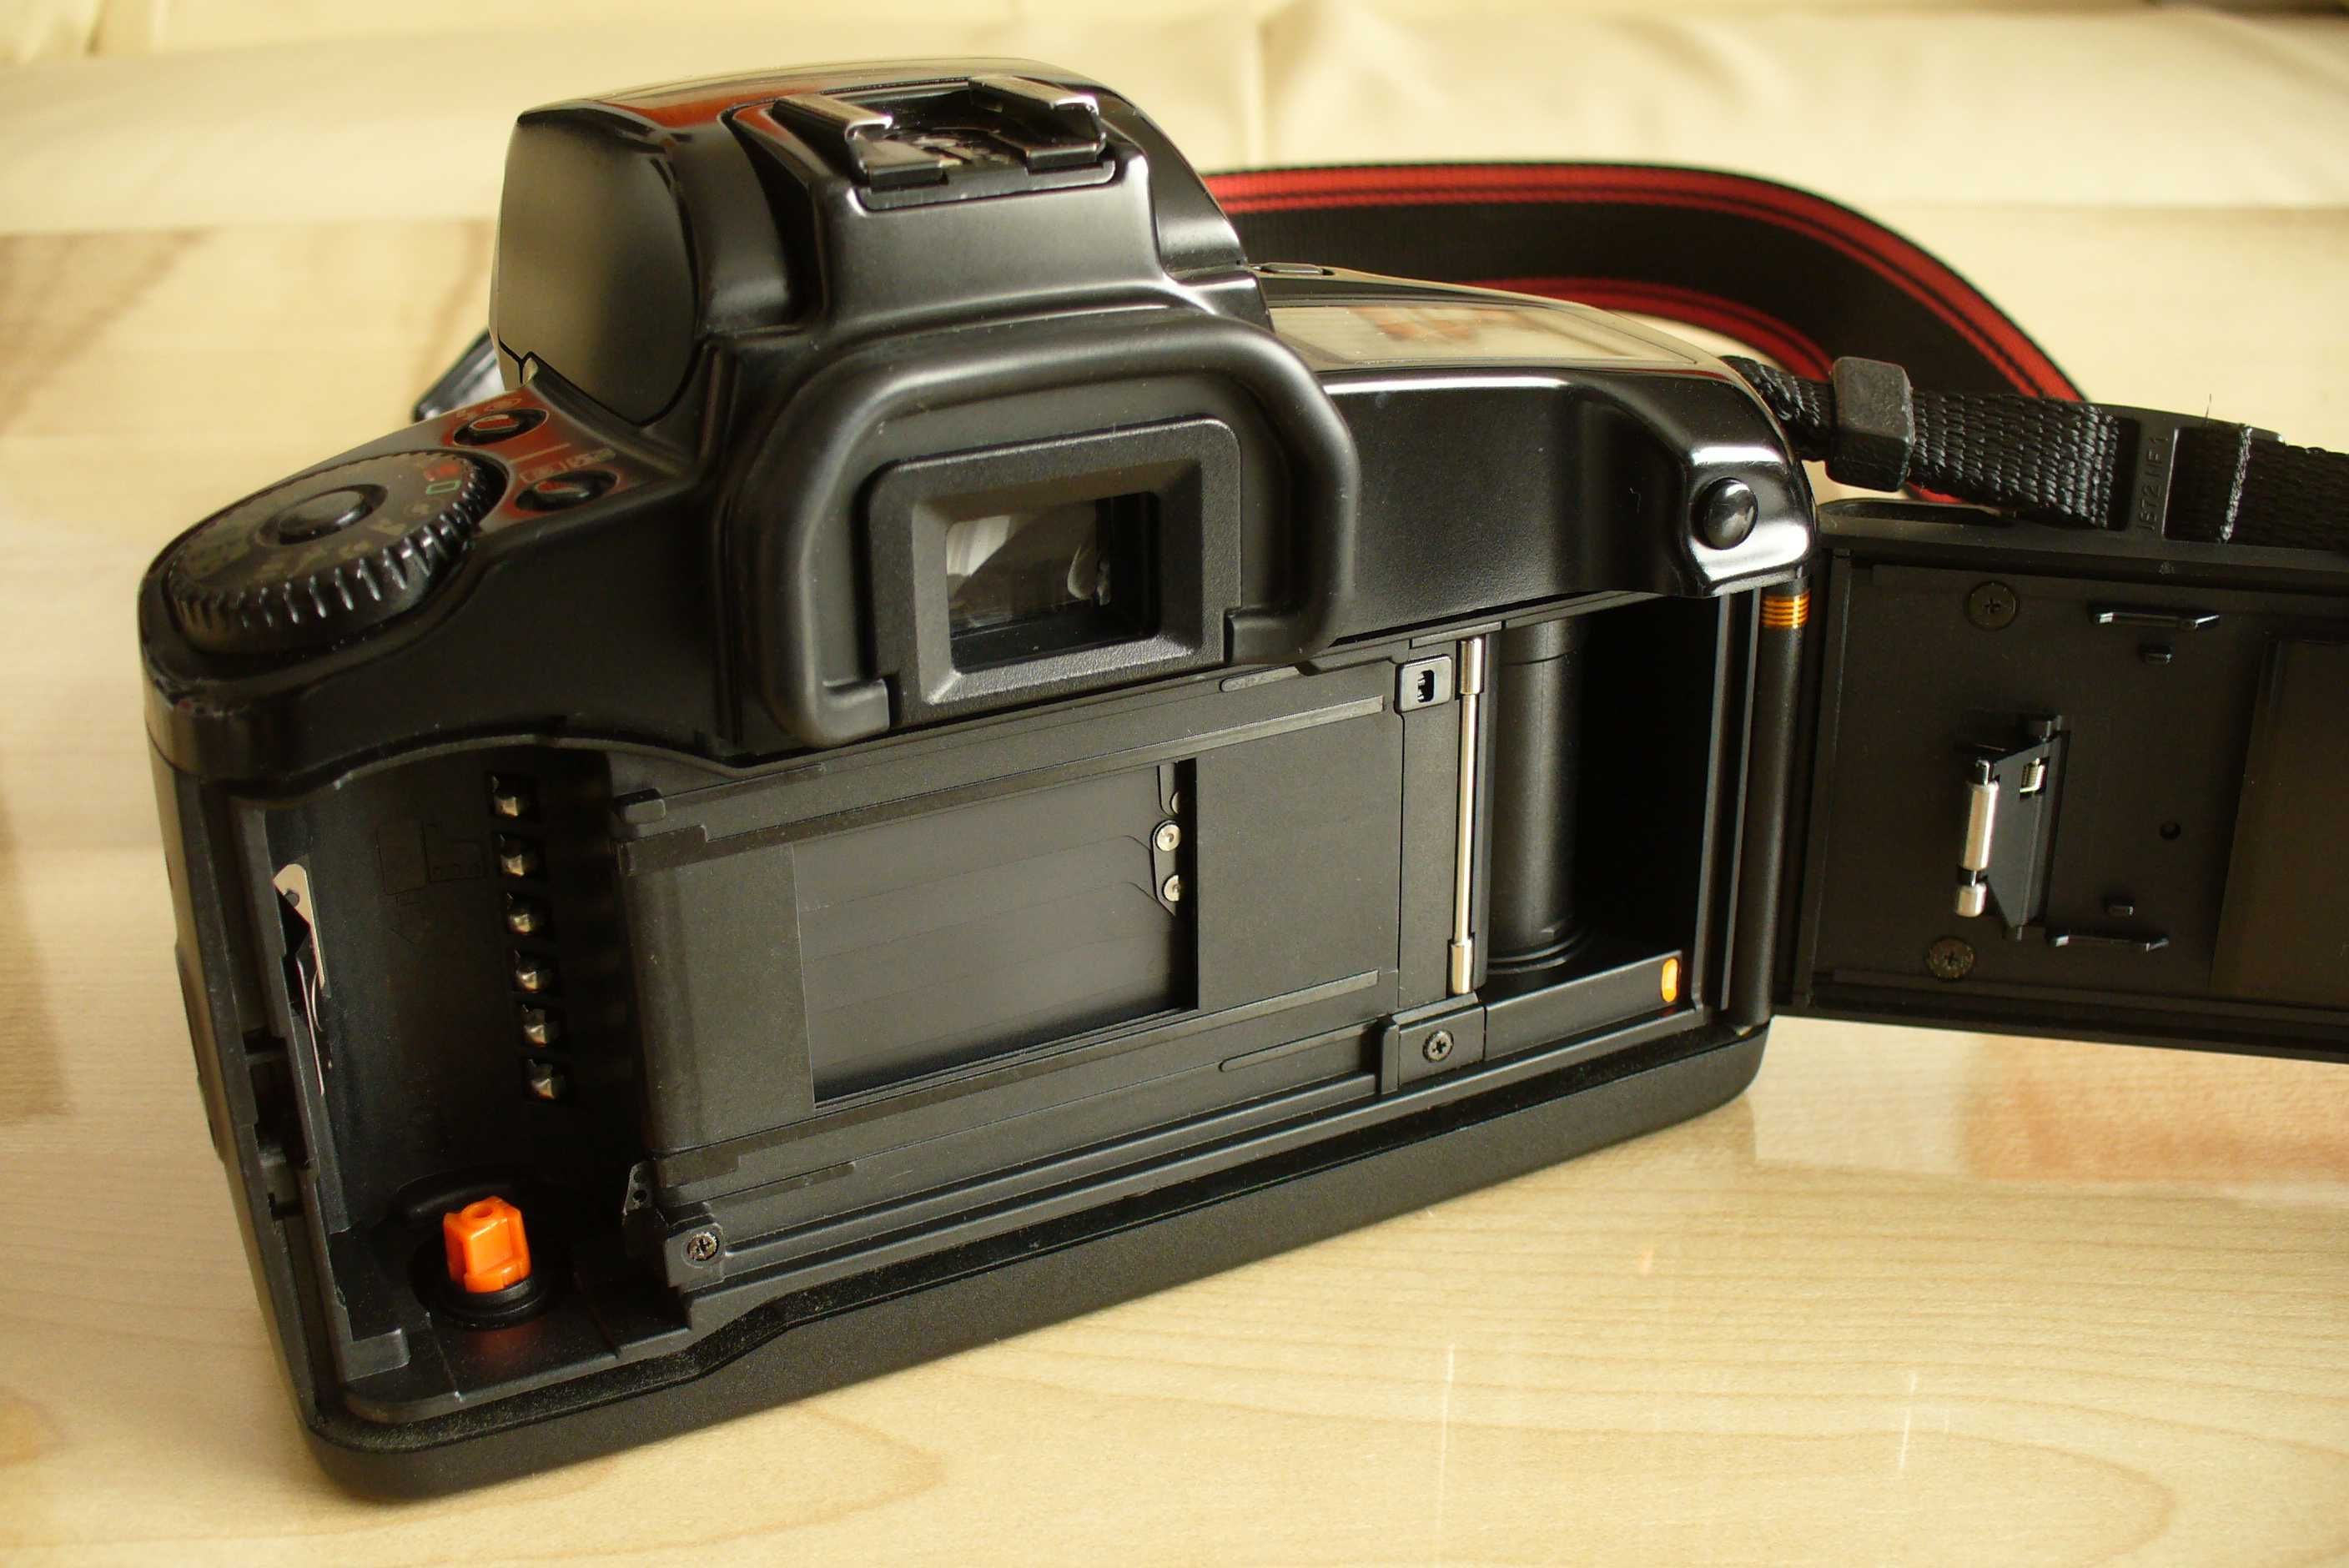 Aparat analogowy Canon EOS Elan (EOS 100) z akcesoriami.